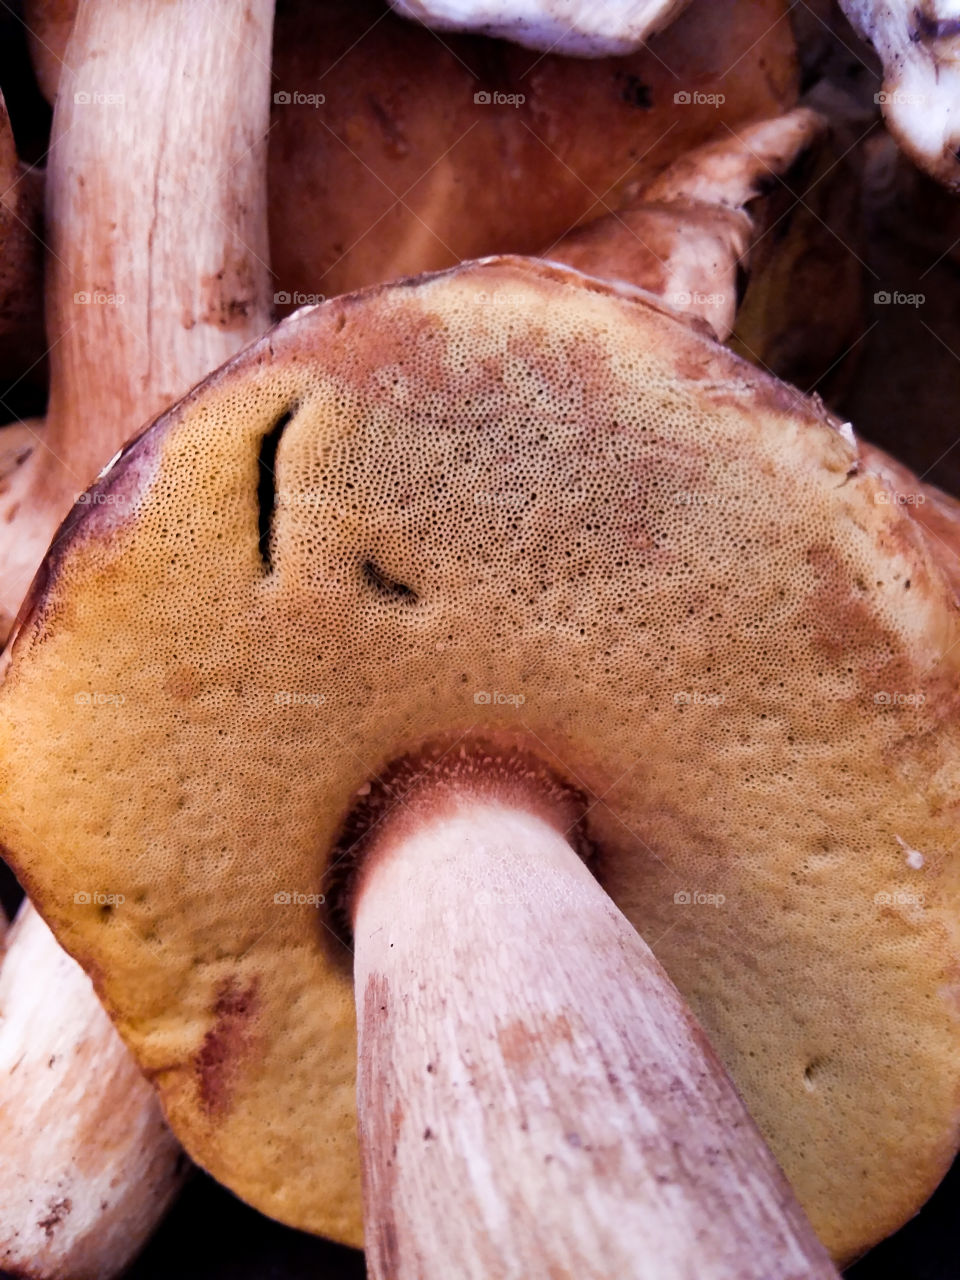 pores cap white mushrooms